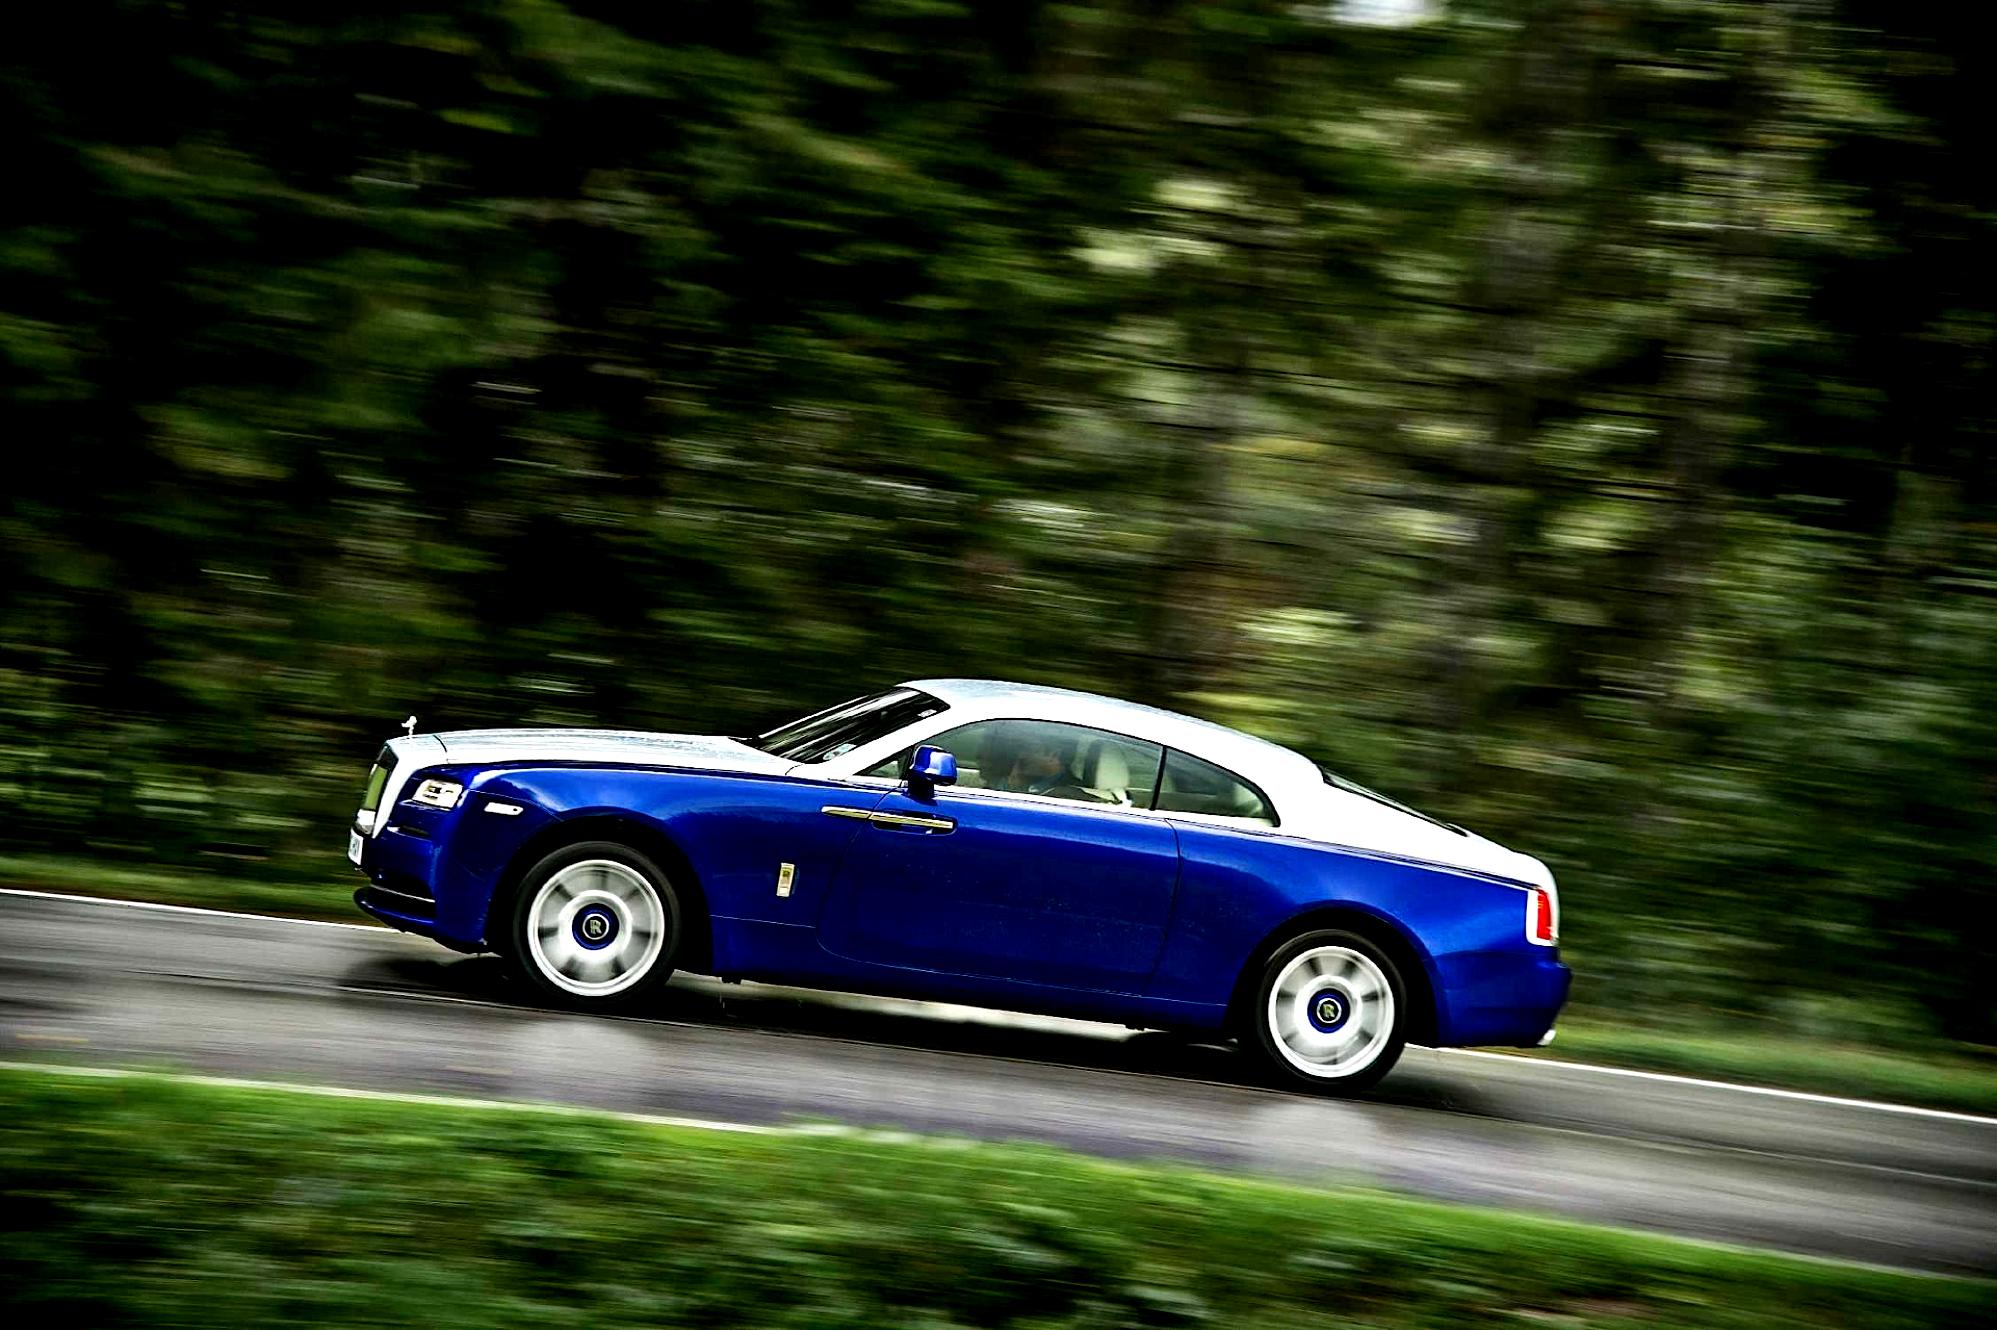 Rolls-Royce Wraith 2013 #48